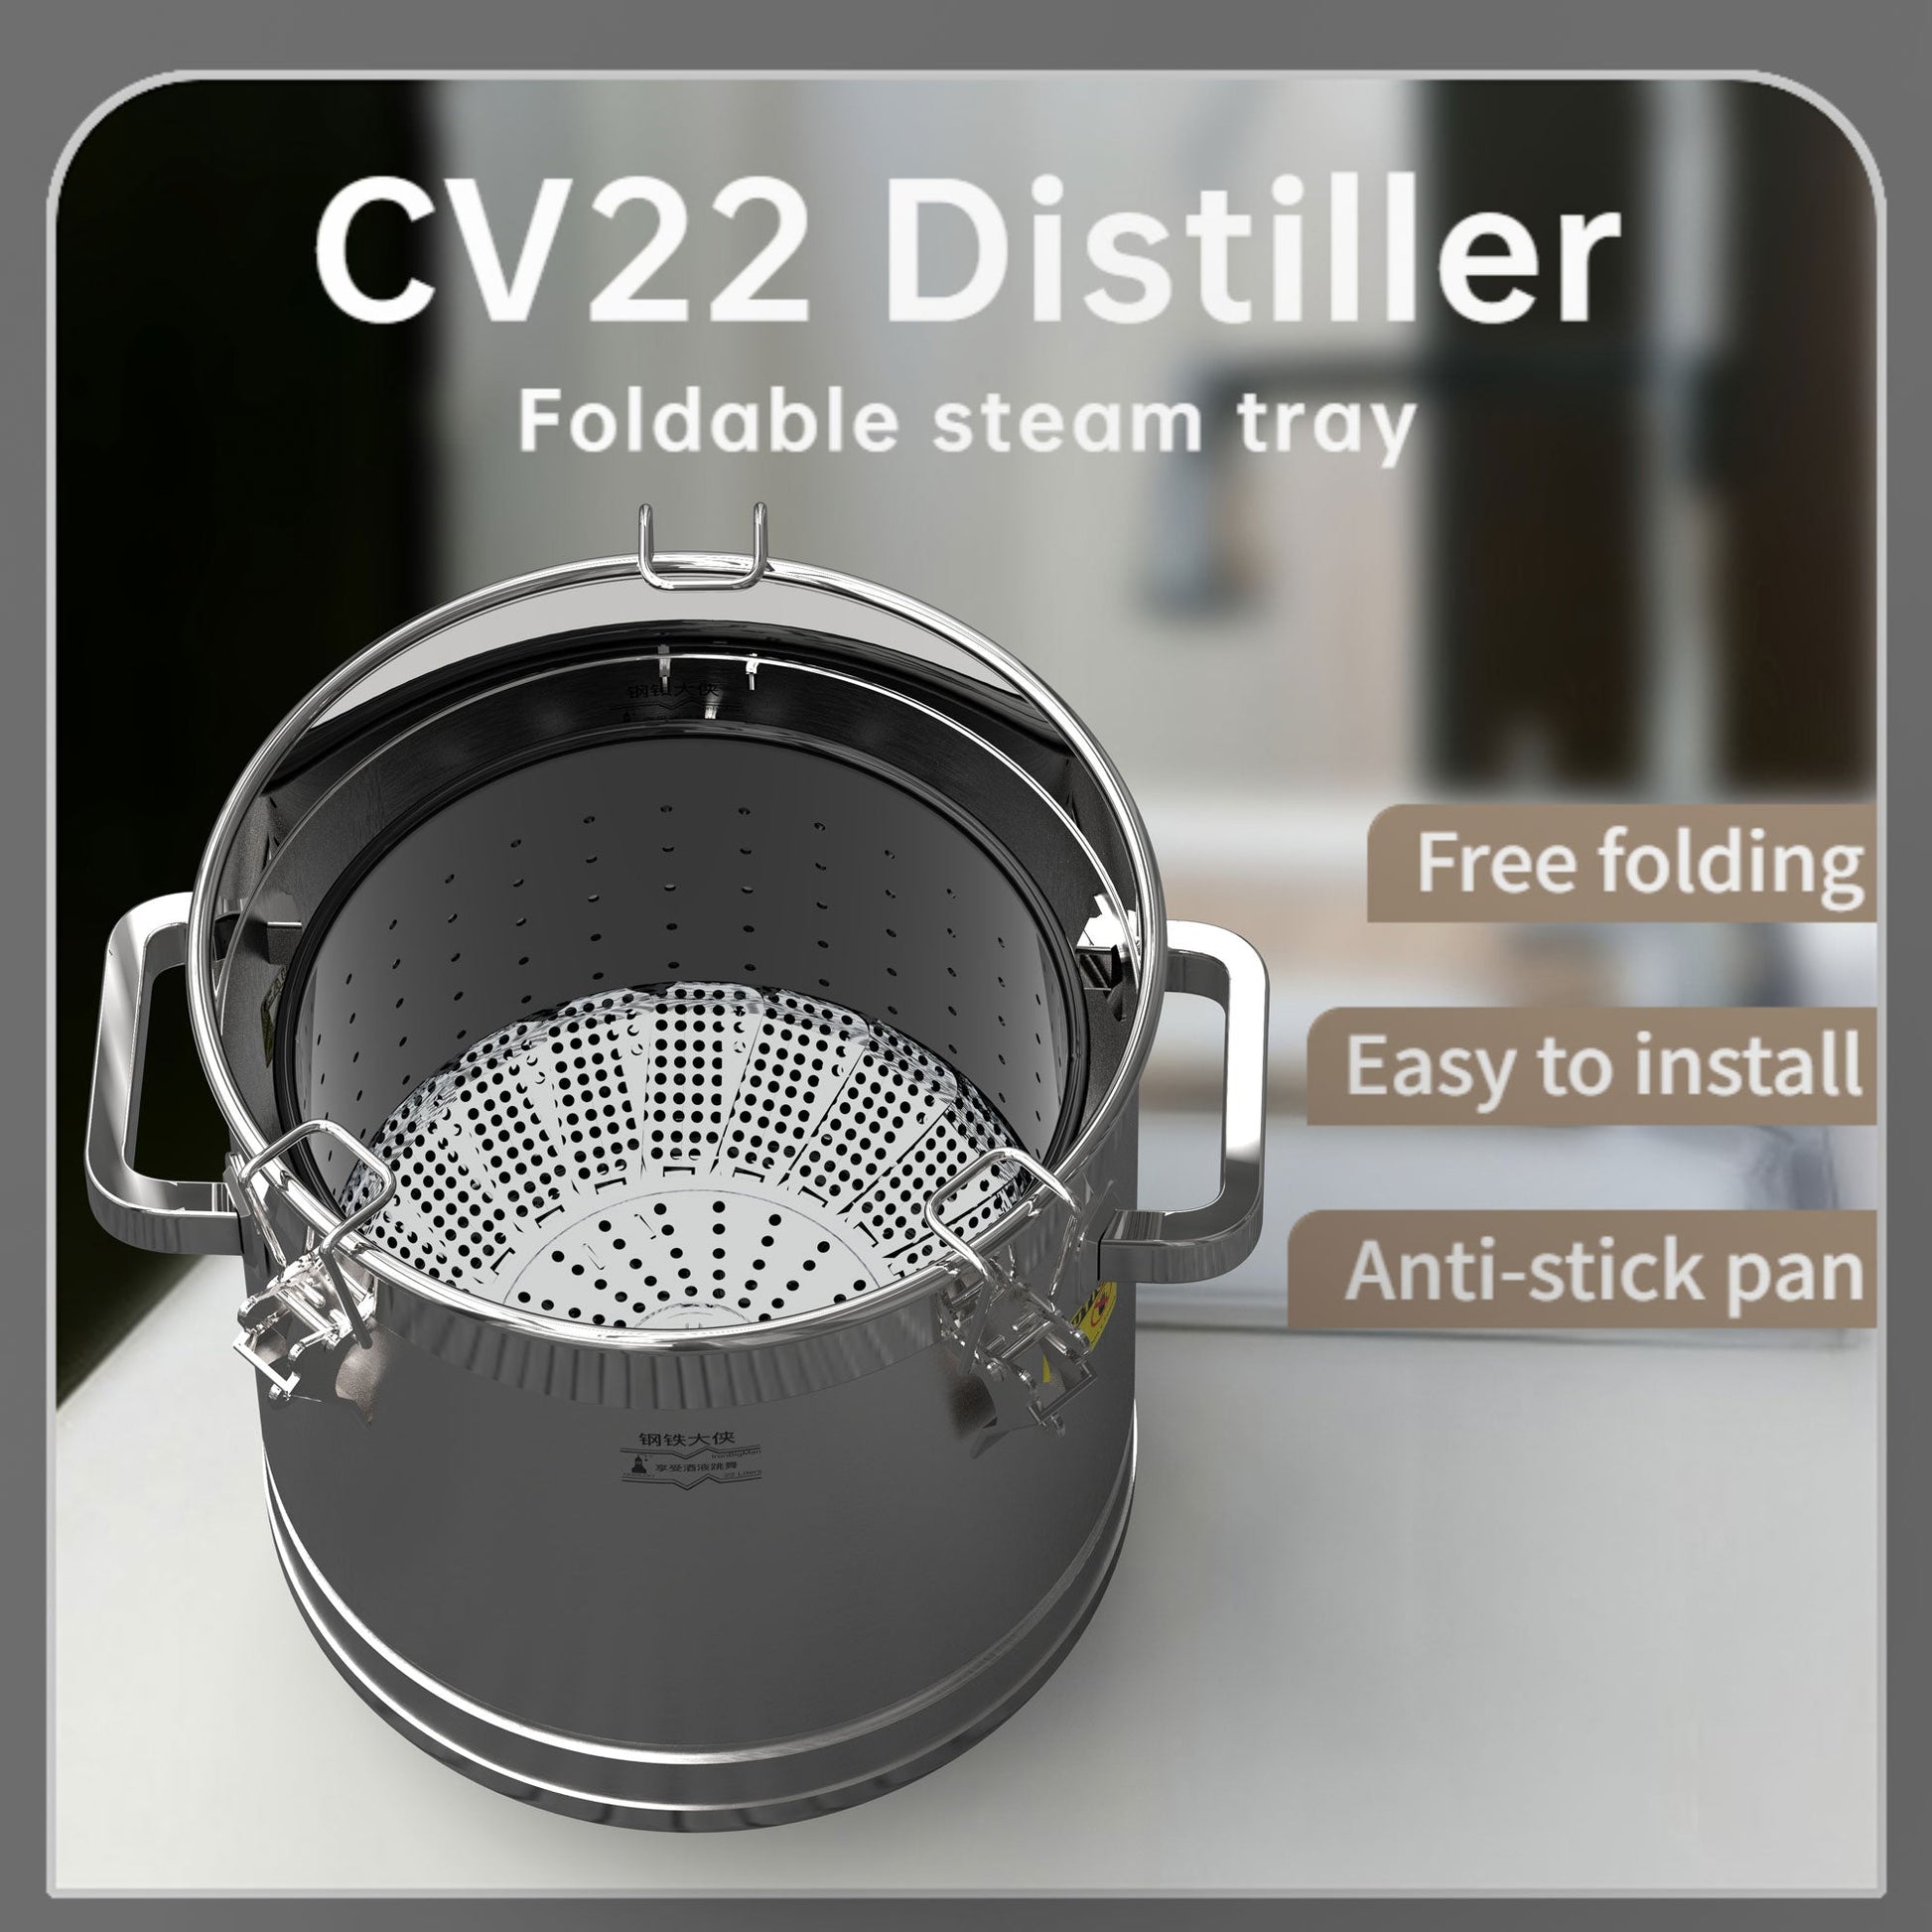 CV22 Distiller【Free shipping worldwide!】 - Hooloo Distilling Equipment Supply